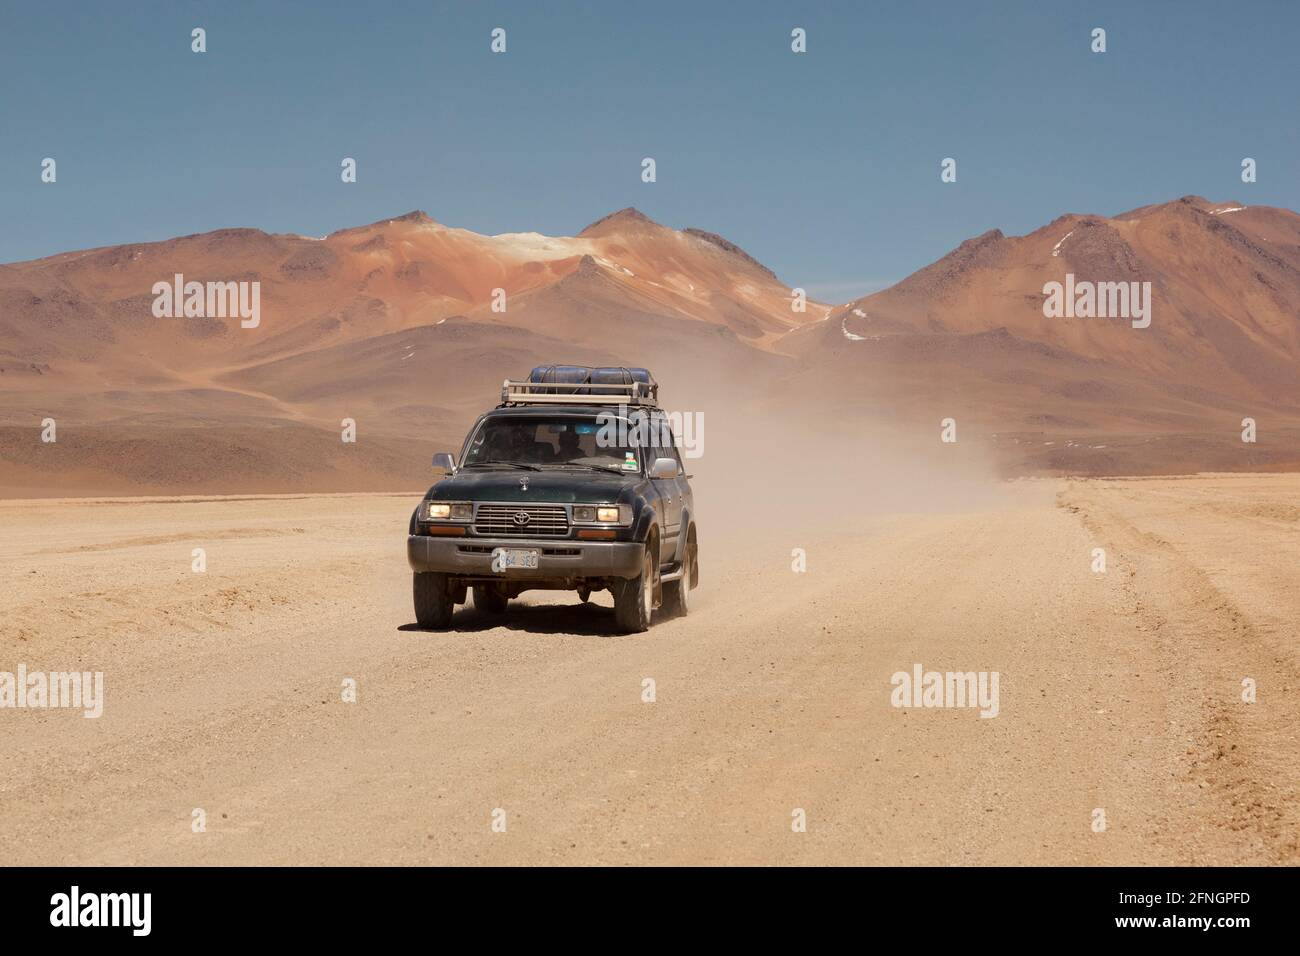 Sullo sfondo di vulcani, un veicolo fuoristrada 4x4 attraversa il paesaggio desertico della Bolivia in un safari turistico terrestre. Foto Stock